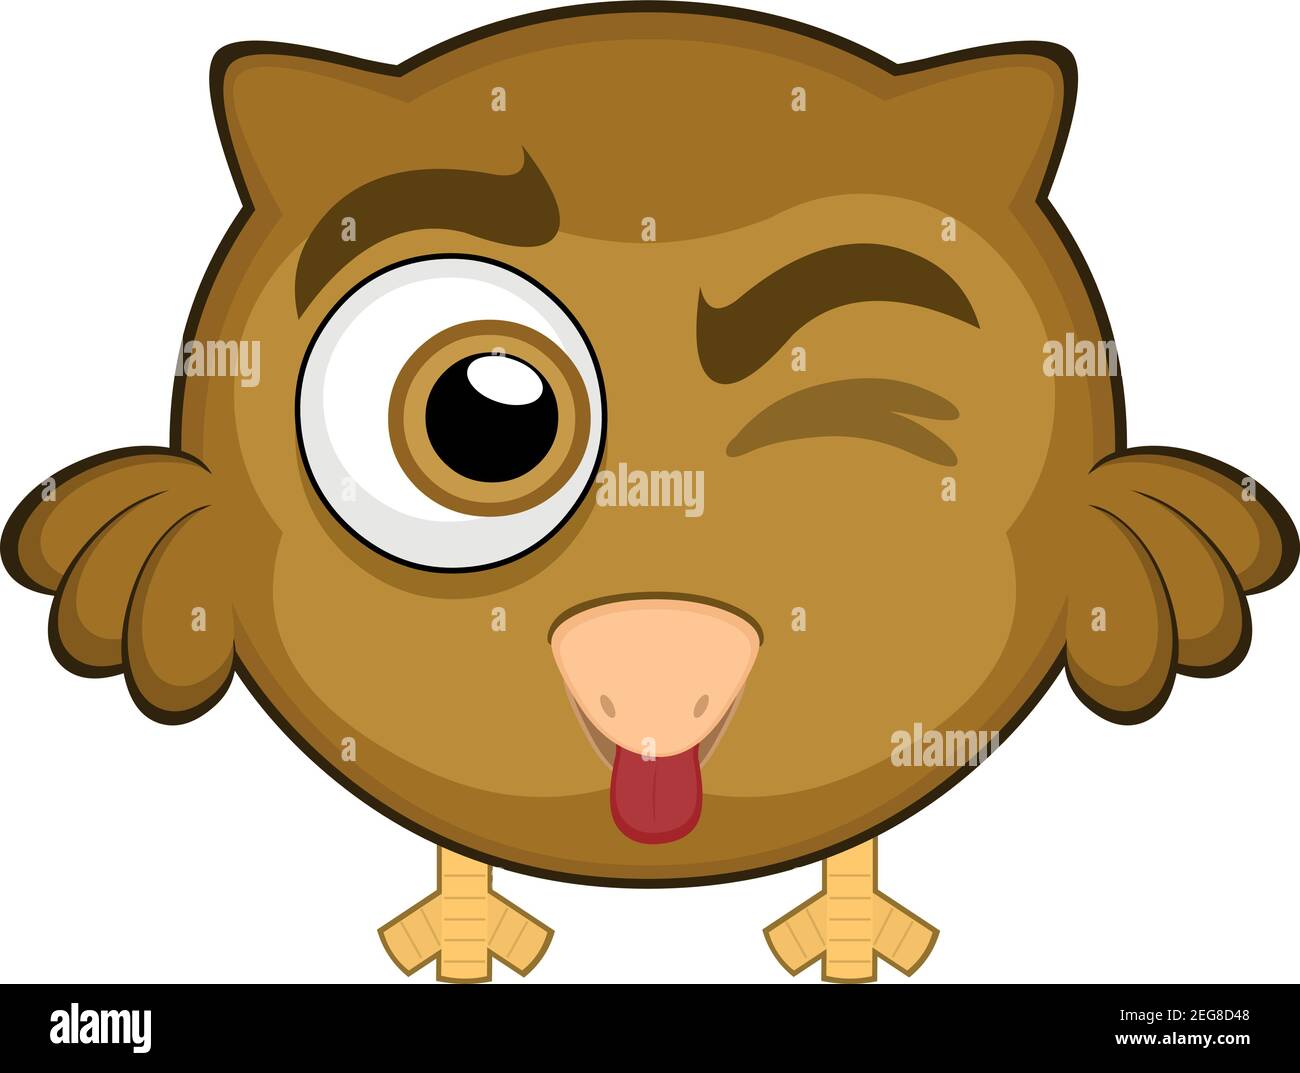 Vecteur émoticône illustration dessin animé de la tête d'un hibou avec une expression heureuse, wencant et en collant sa langue avec sa bouche ouverte Illustration de Vecteur